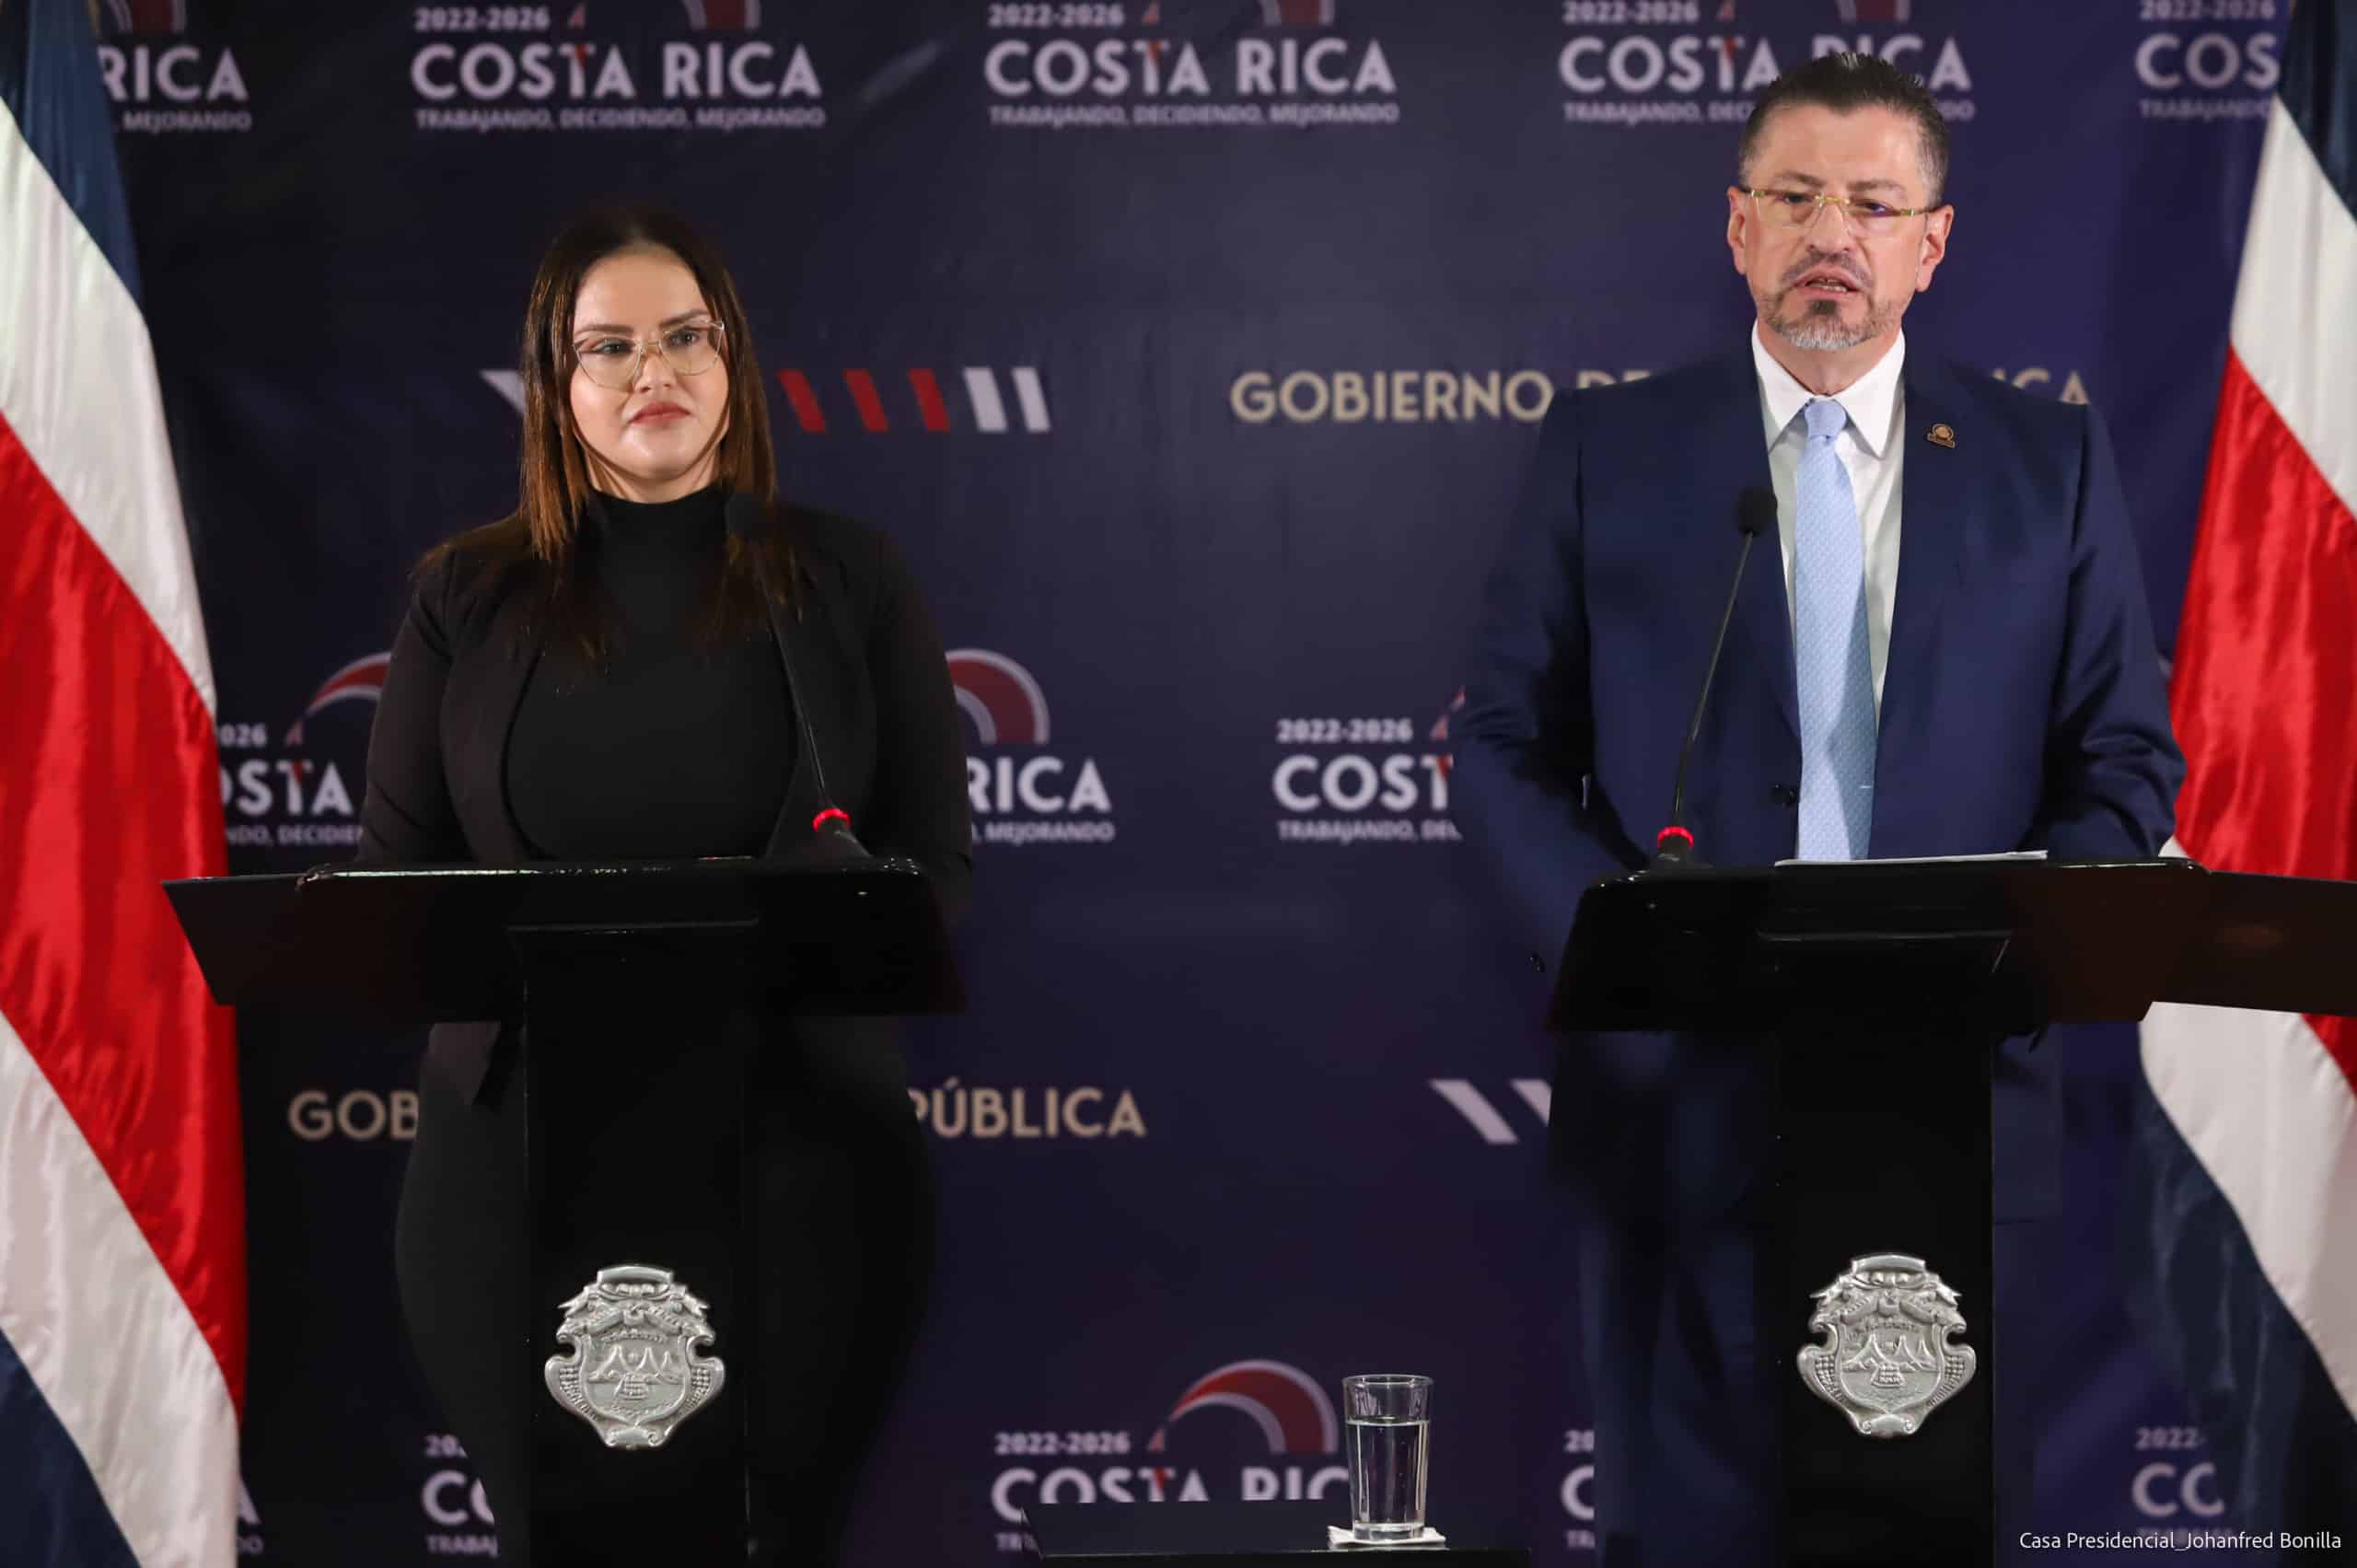 Presidente Chaves reitera su oposición a la vacunación obligatoria anticovid en Costa Rica